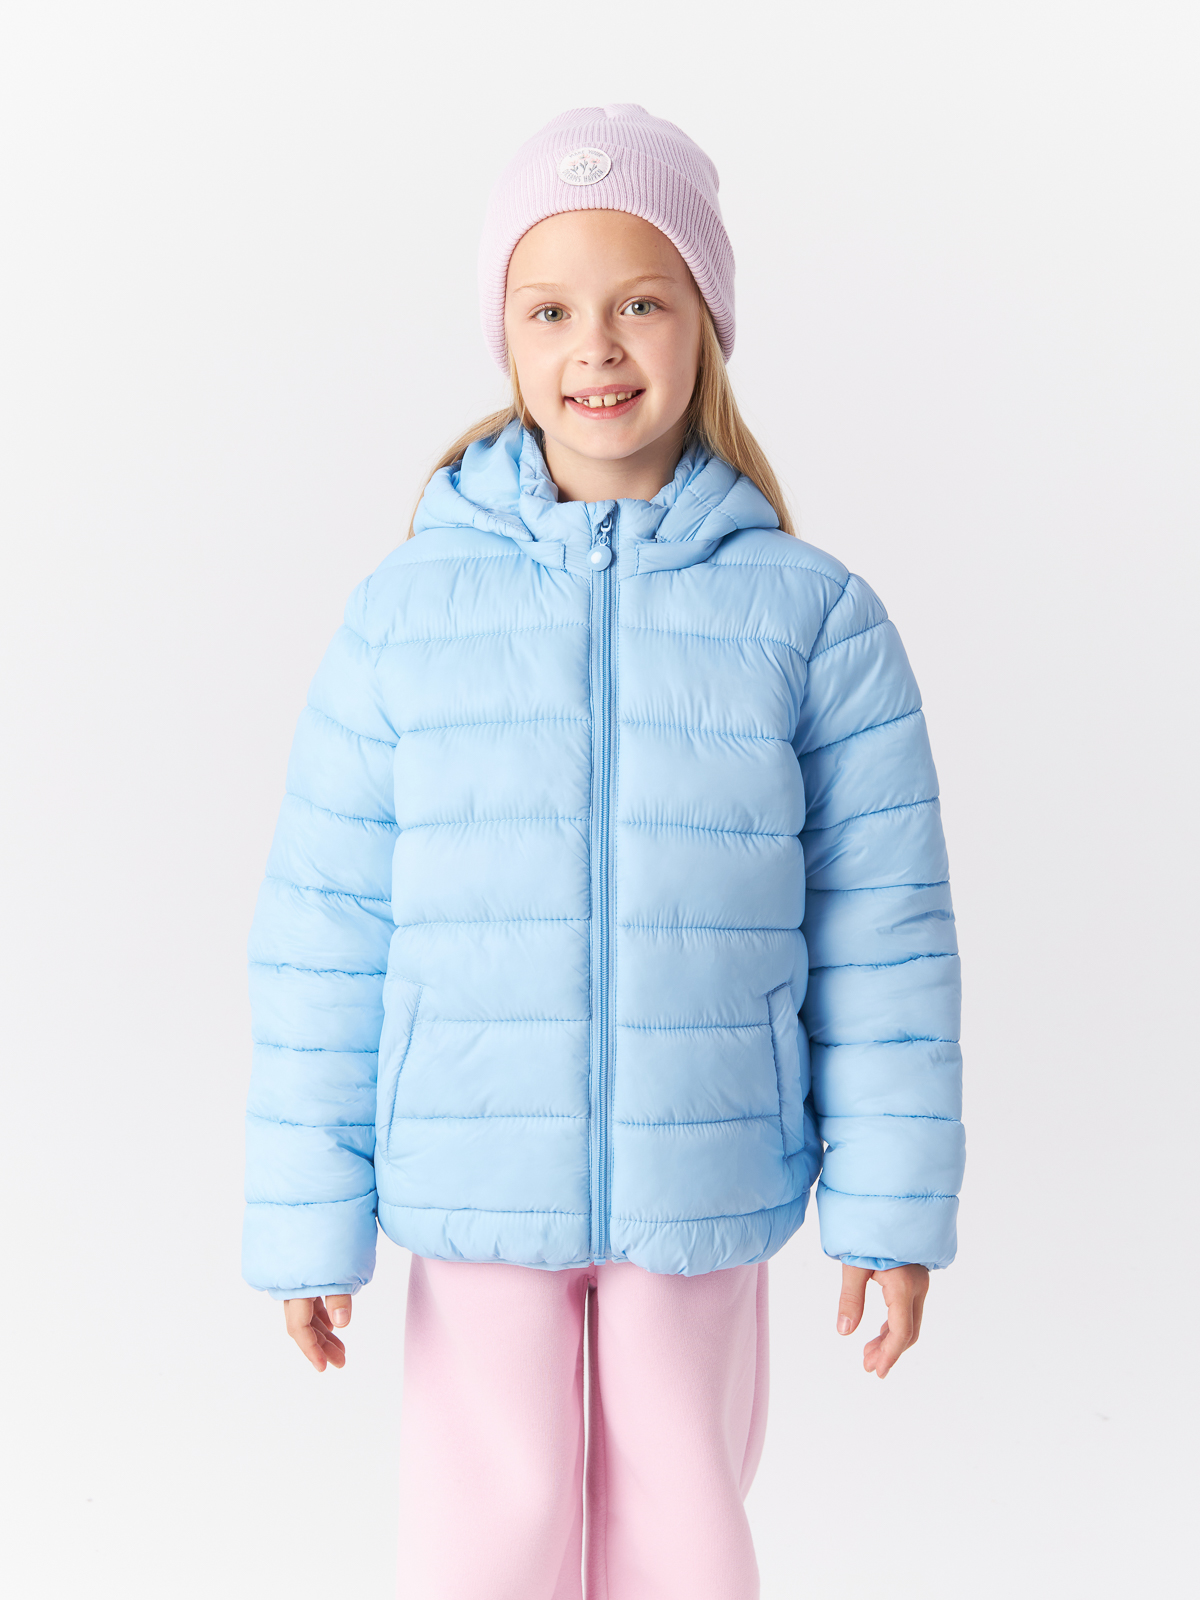 Куртка Mcstyles для девочки, размер 146, SMM14, голубая